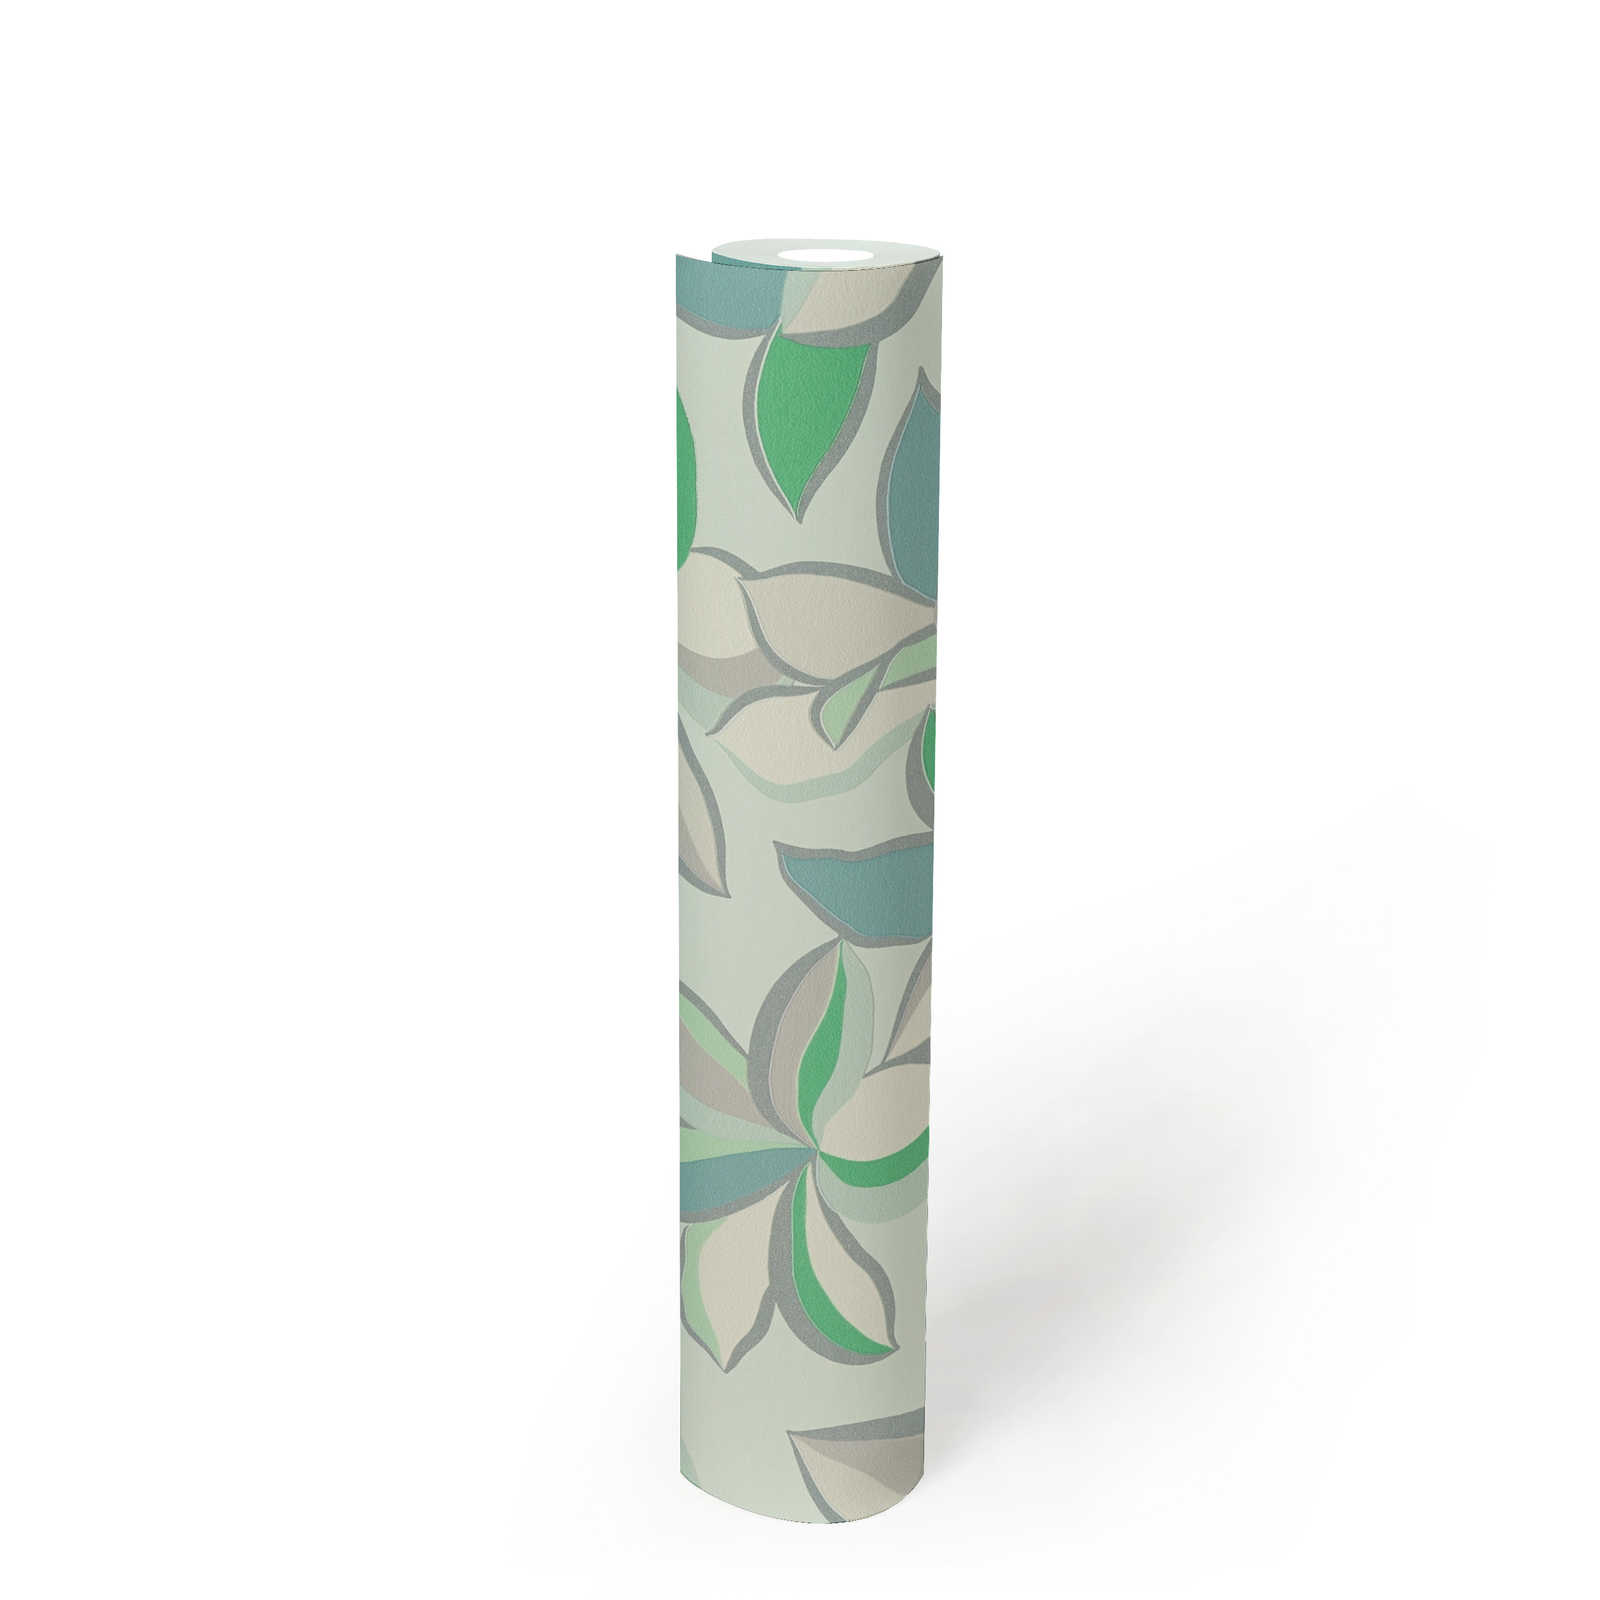             Carta da parati floreale in tessuto non tessuto con struttura lucida - verde, grigio
        